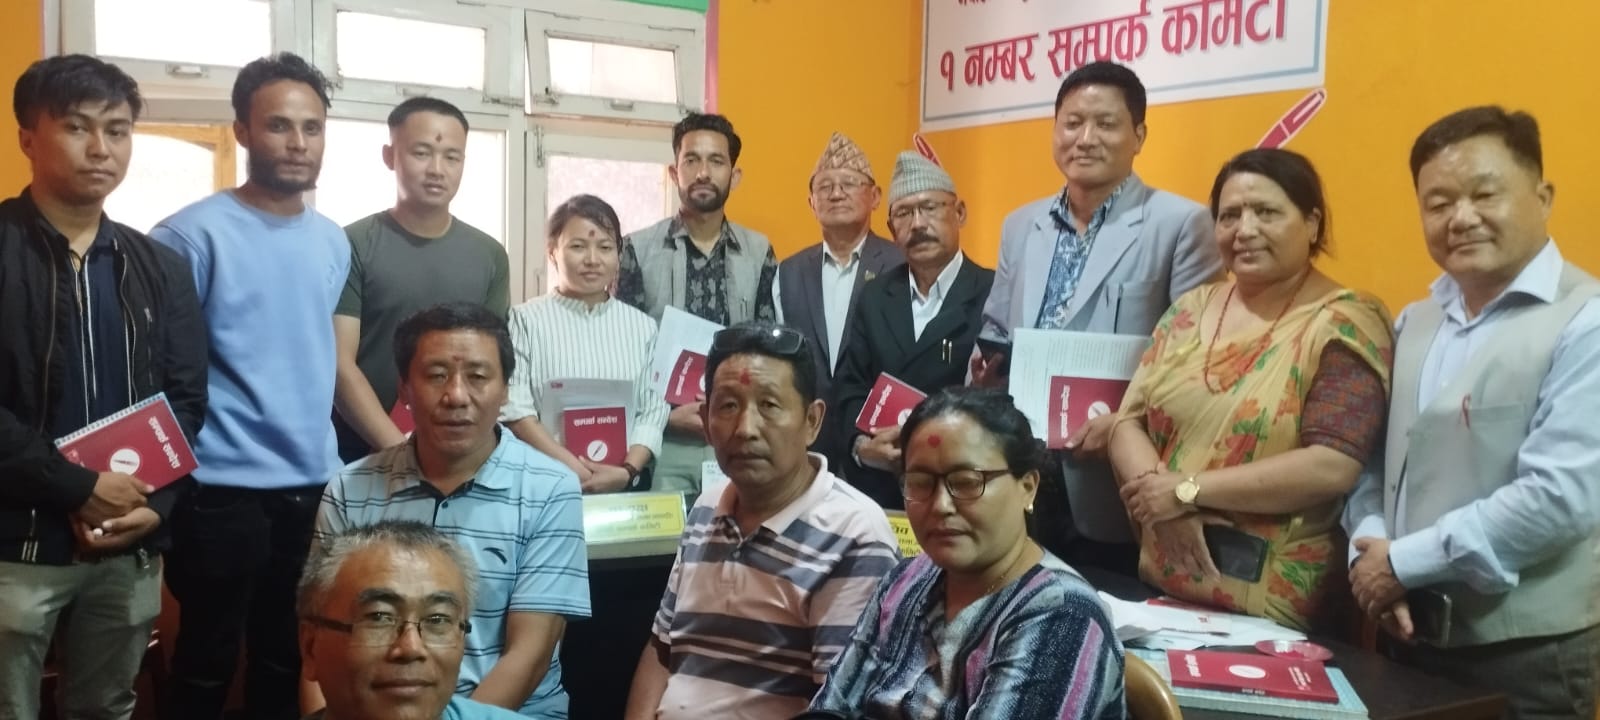 ताप्लेजुङ - काठमाडौँ सम्पर्क मंचको अध्यक्षमा रोशनी लिम्बू